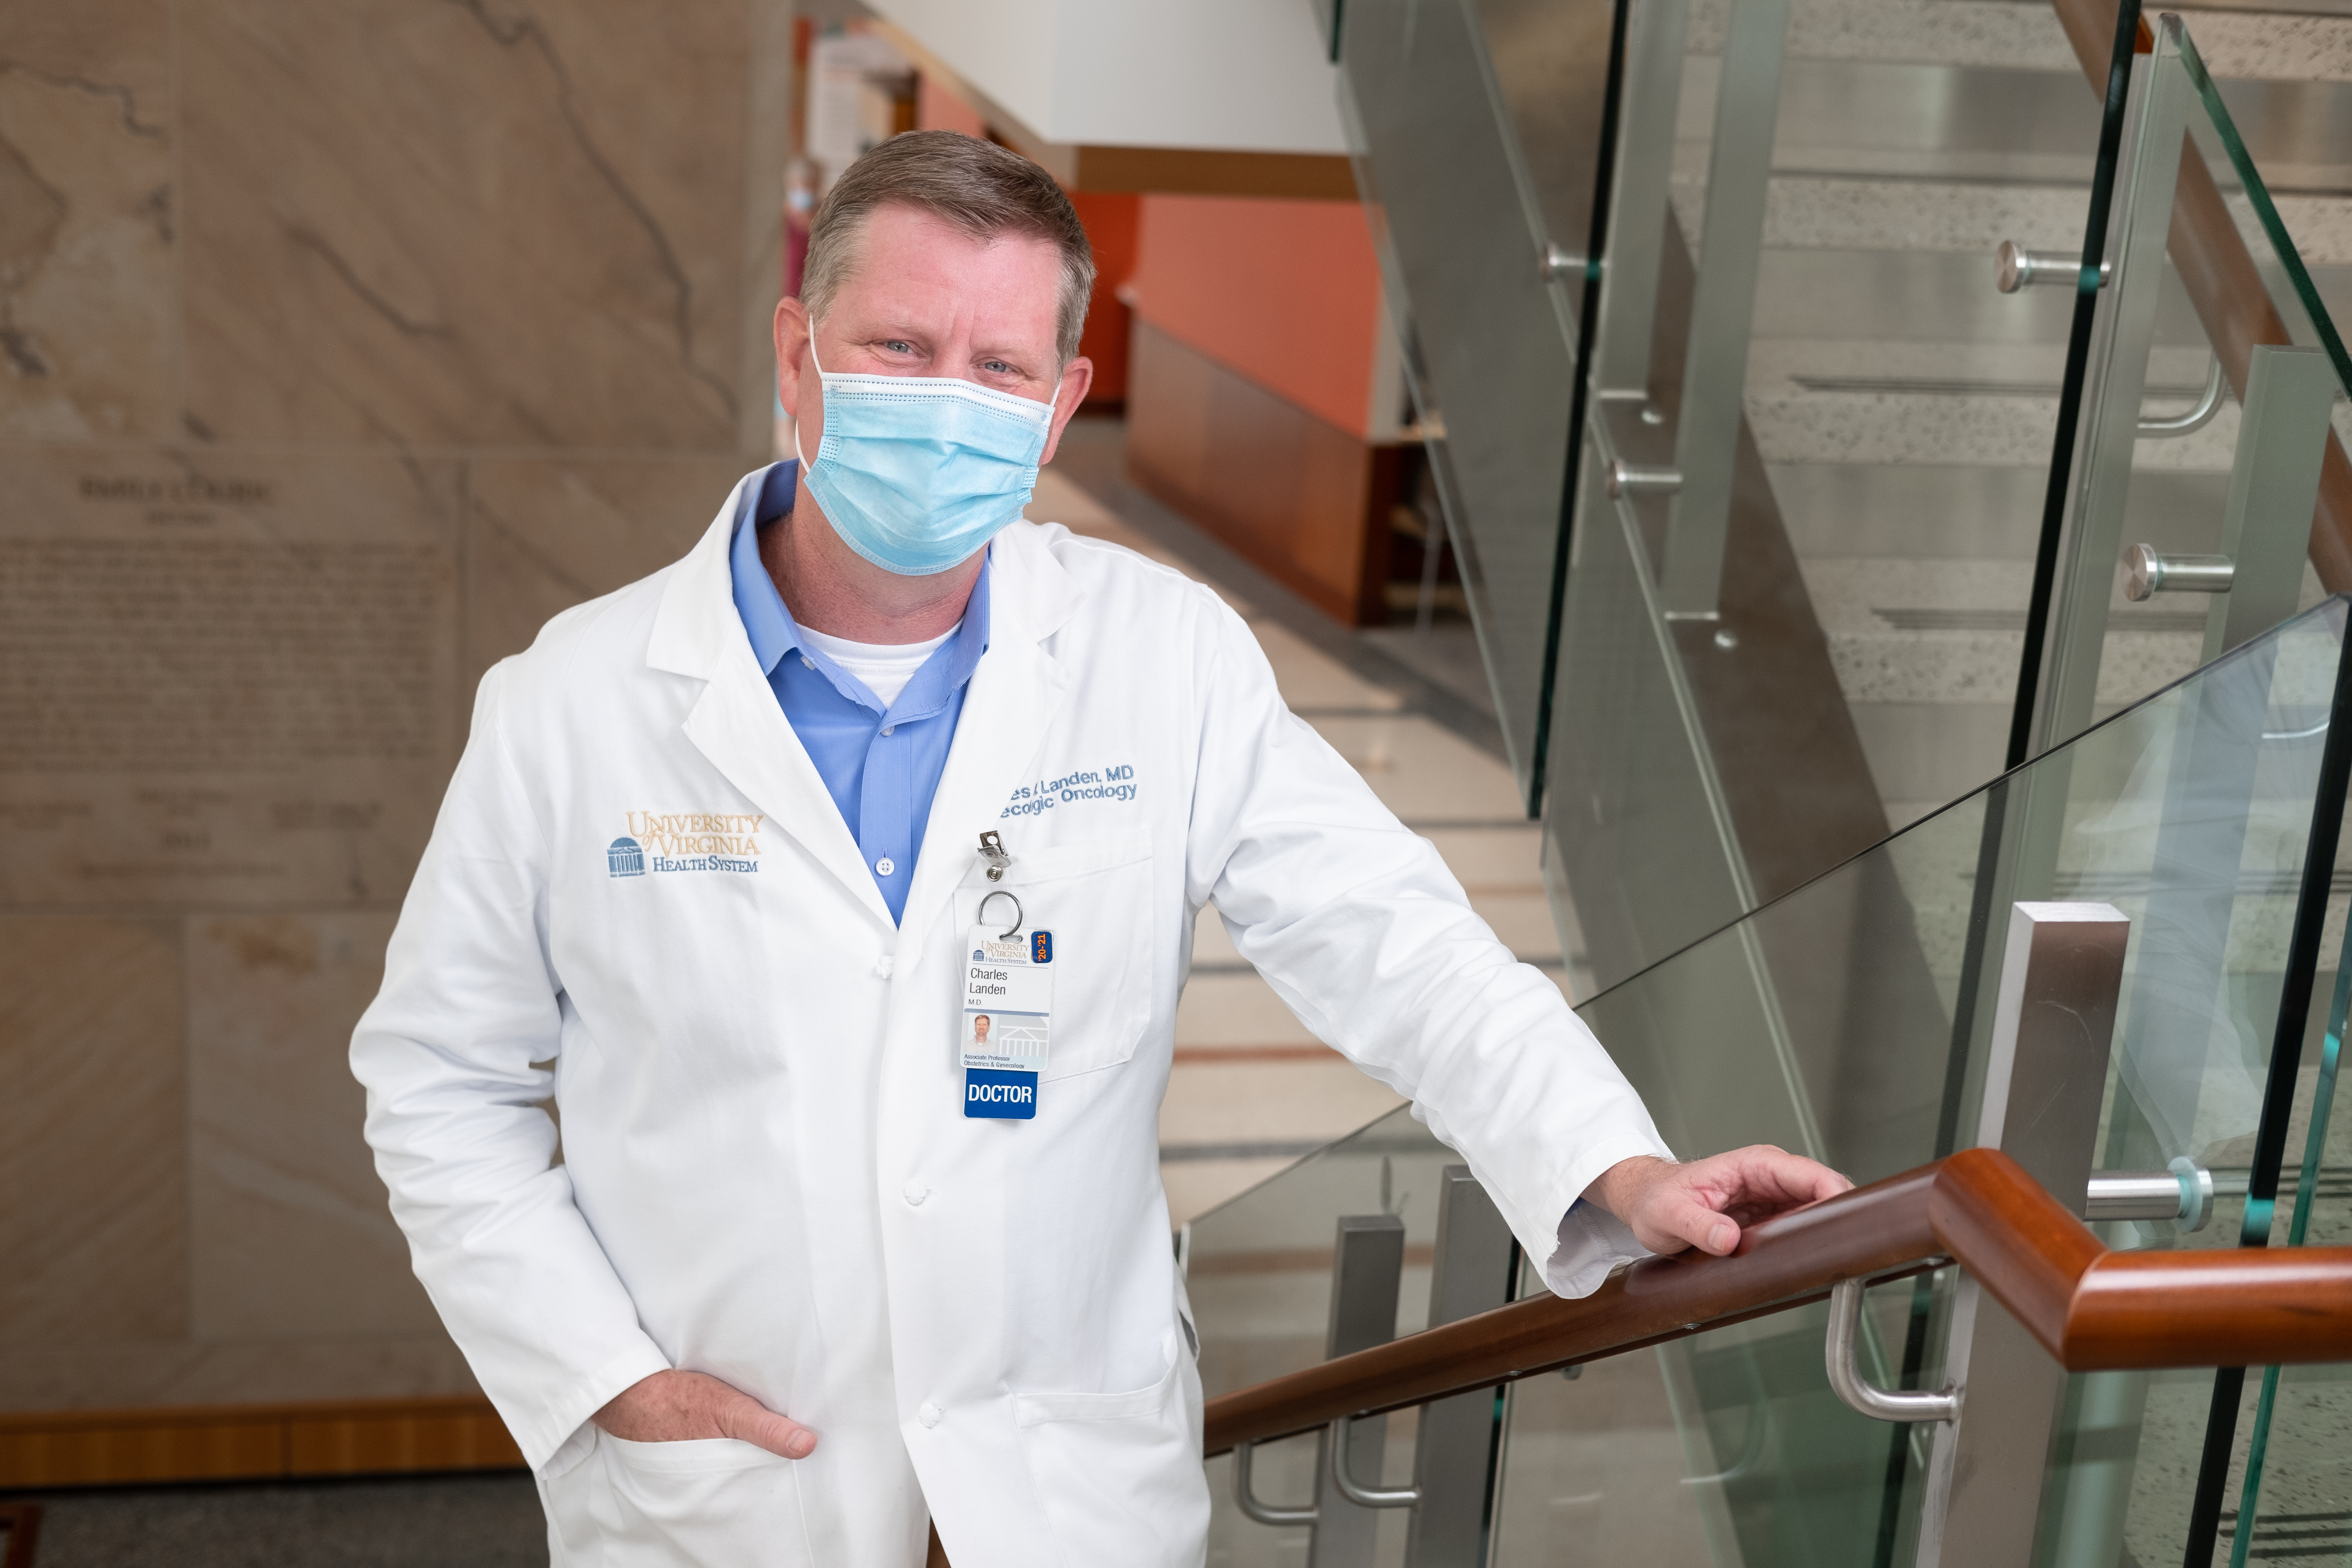 Dr. Landen stands in the cancer center